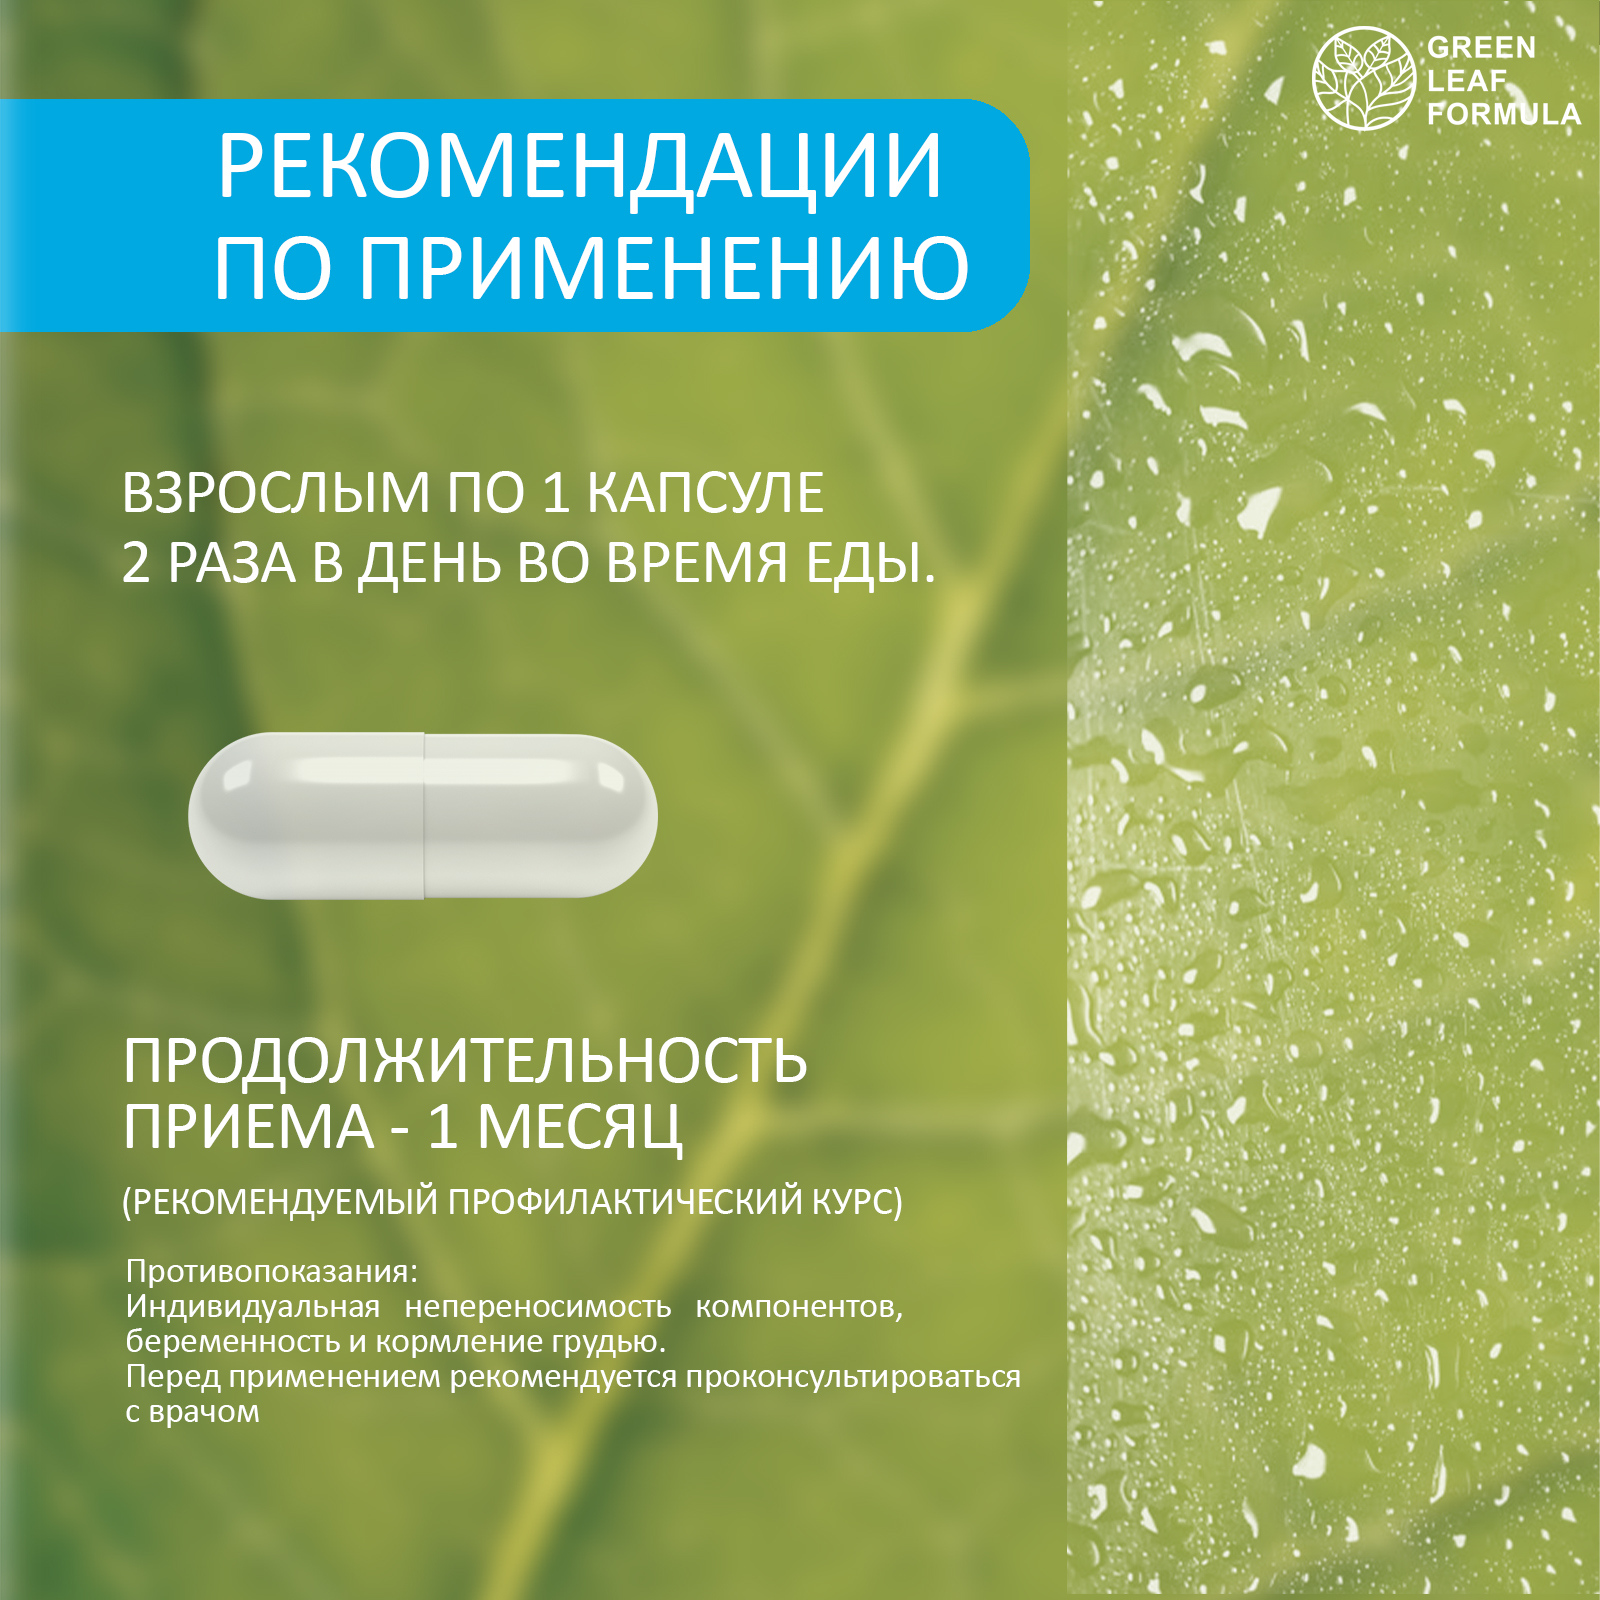 Метабиотик для кишечника Green Leaf Formula ферменты для пищеварения L-карнитин для снижения веса для иммунитета 3 банки - фото 9